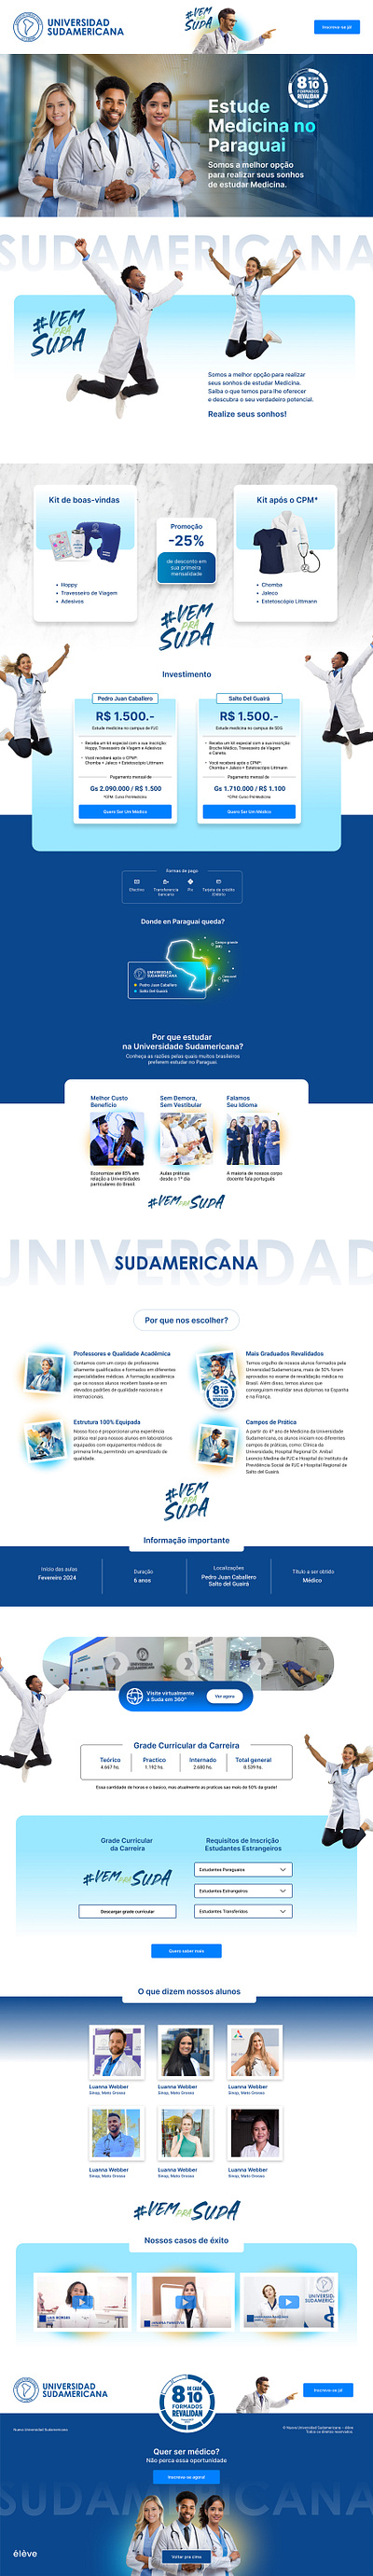 Universidad Sudamericana Landing landing page ui ux web design